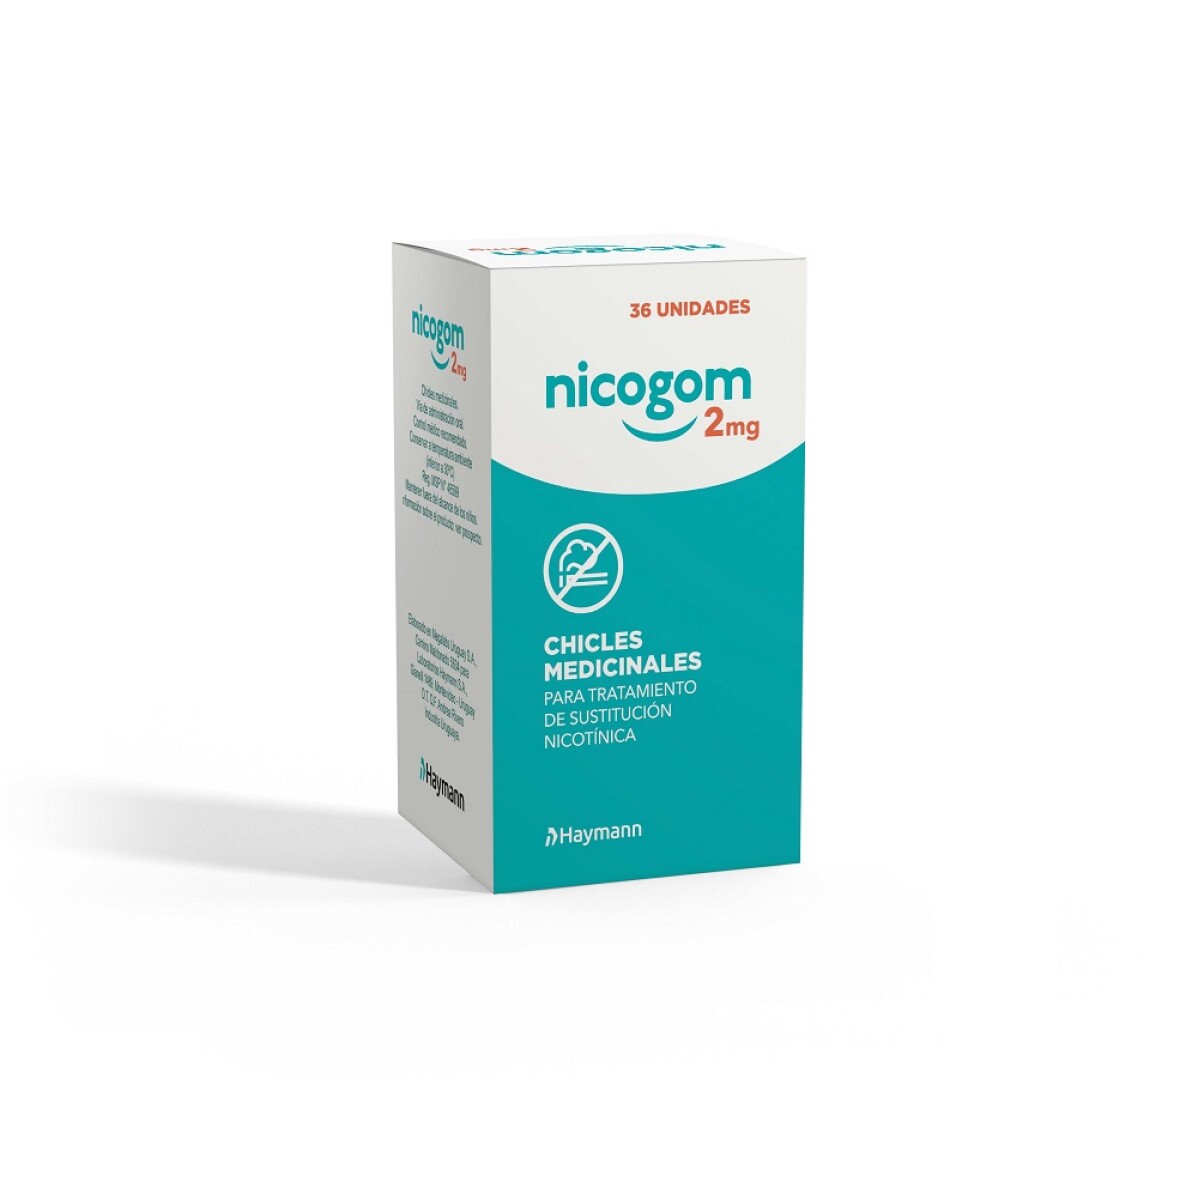 Nicogom 2 Mg. Chicle De Nicotina 36 Uds. — Farmacia El túnel